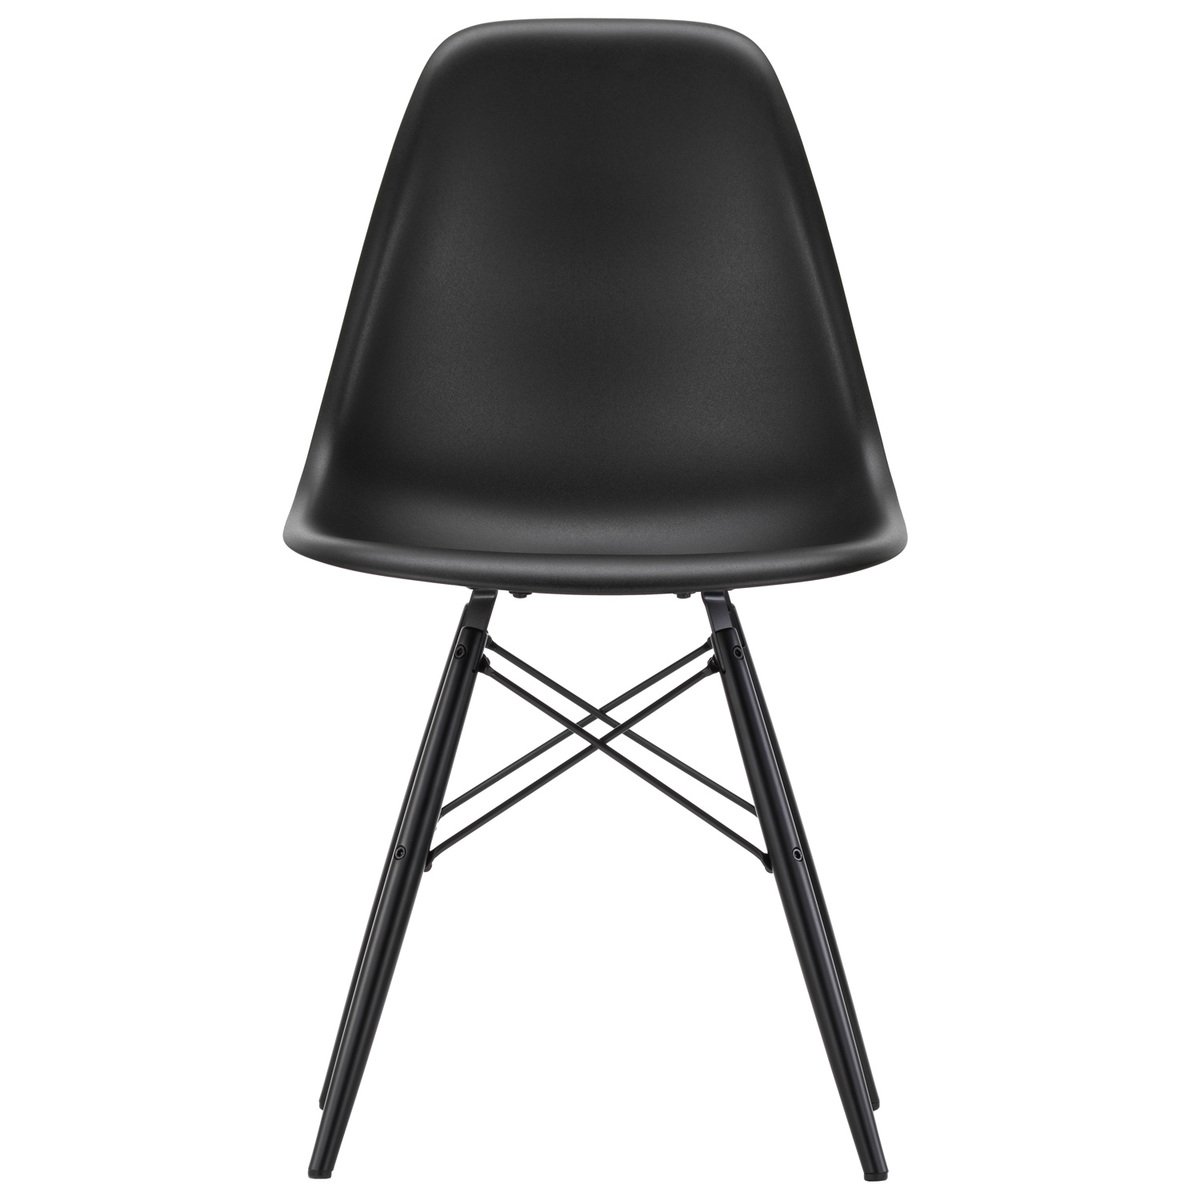 Vitra Eames DSW tuoli, deep black - musta vaahtera